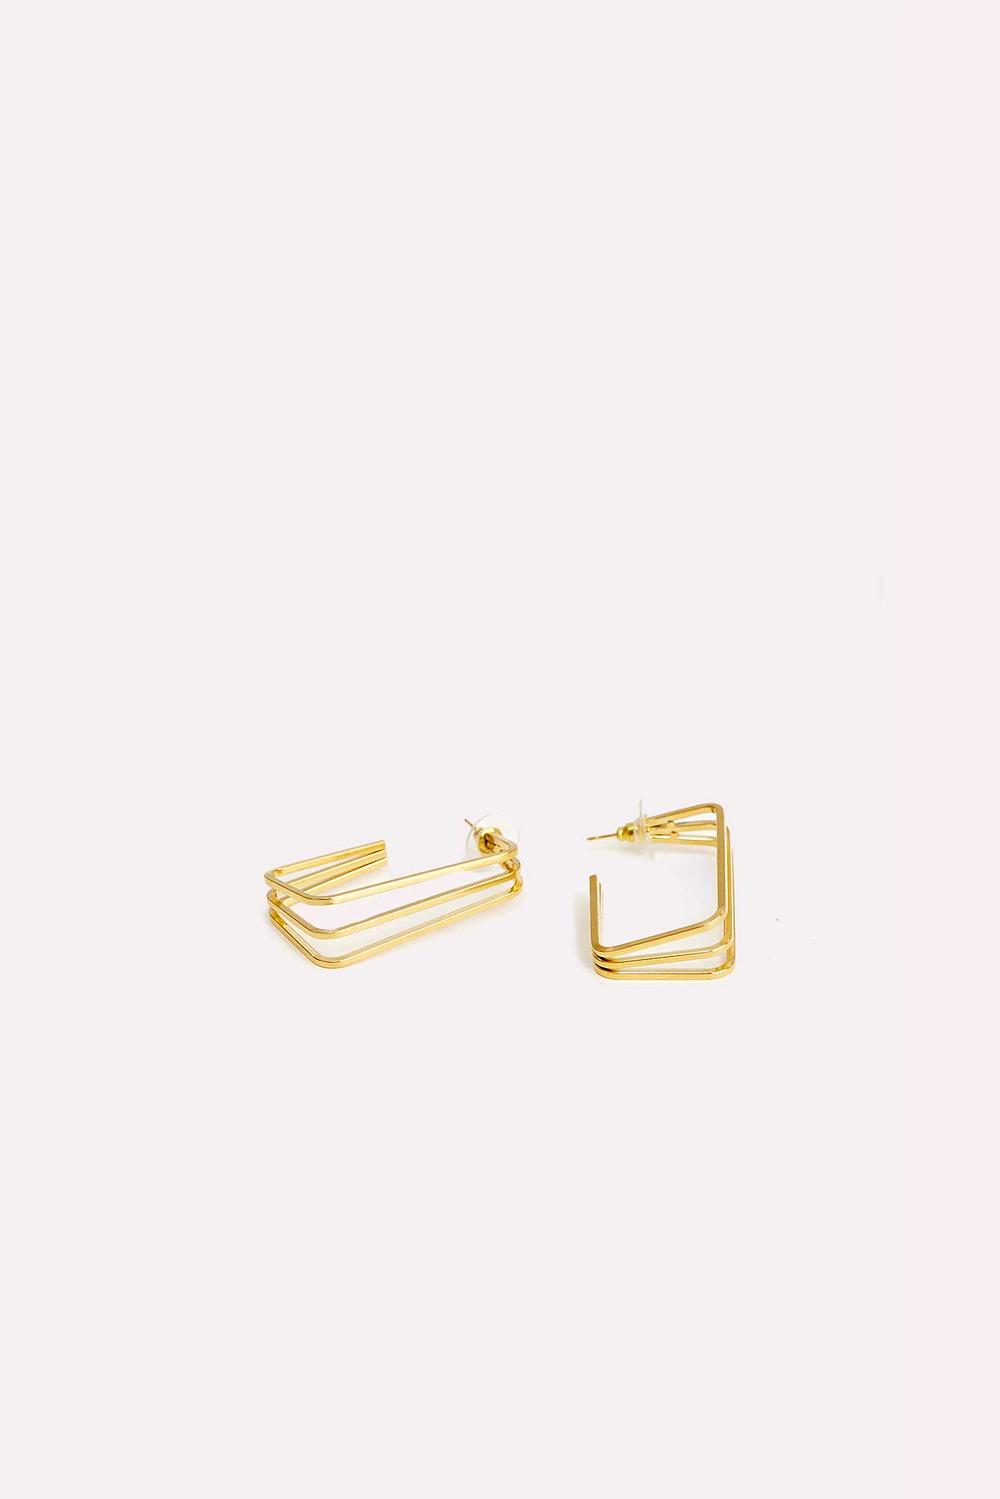 Gold rectangular earrings